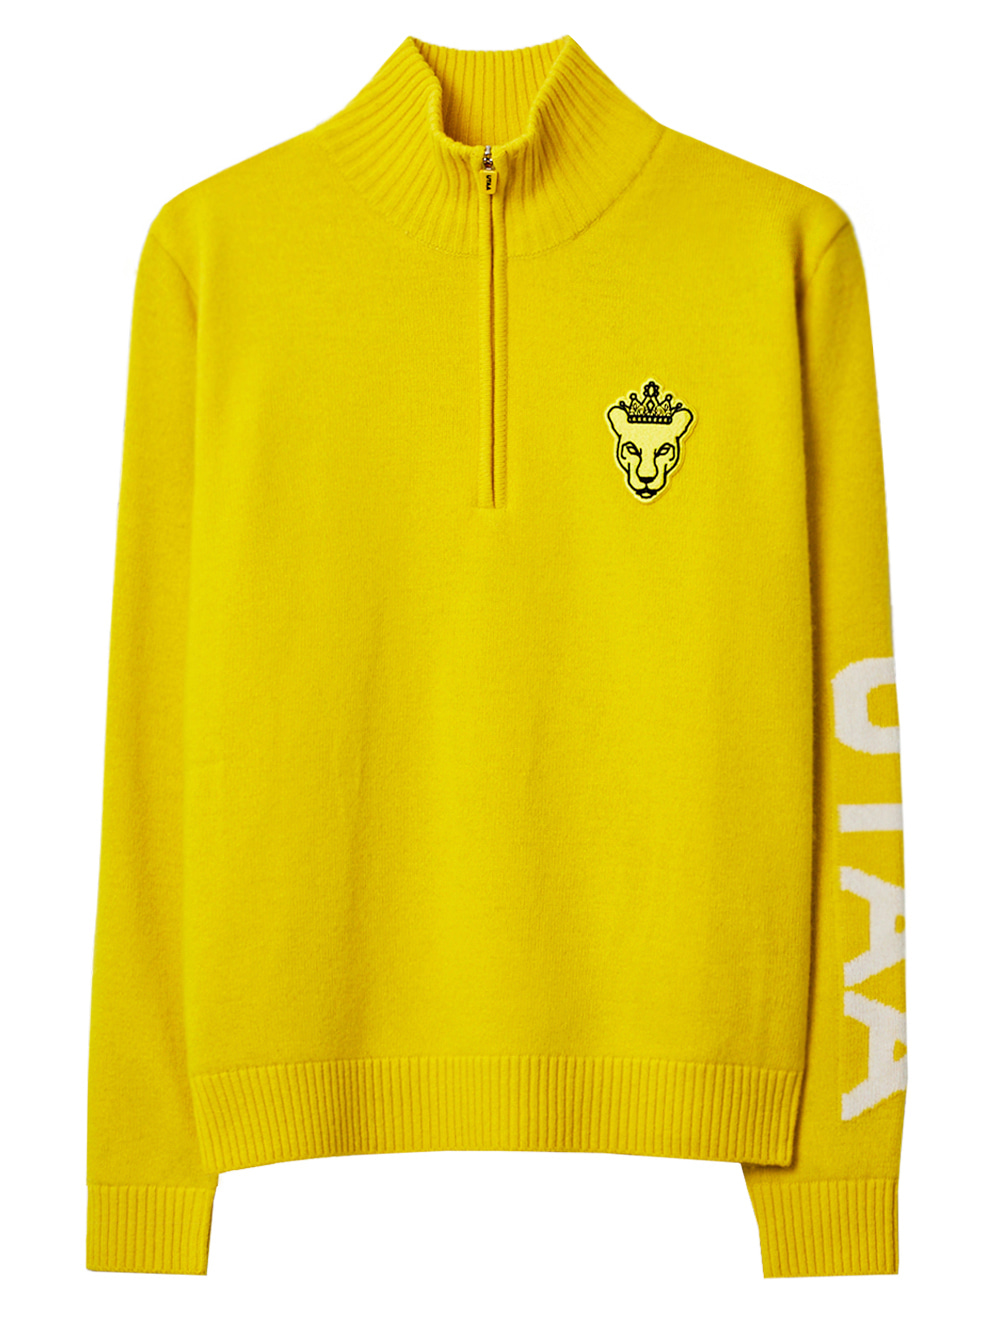 UTAA Crown Panther Wappen Half-Zip Knit : Men&#039;s Yellow (UB4KTM583YE)